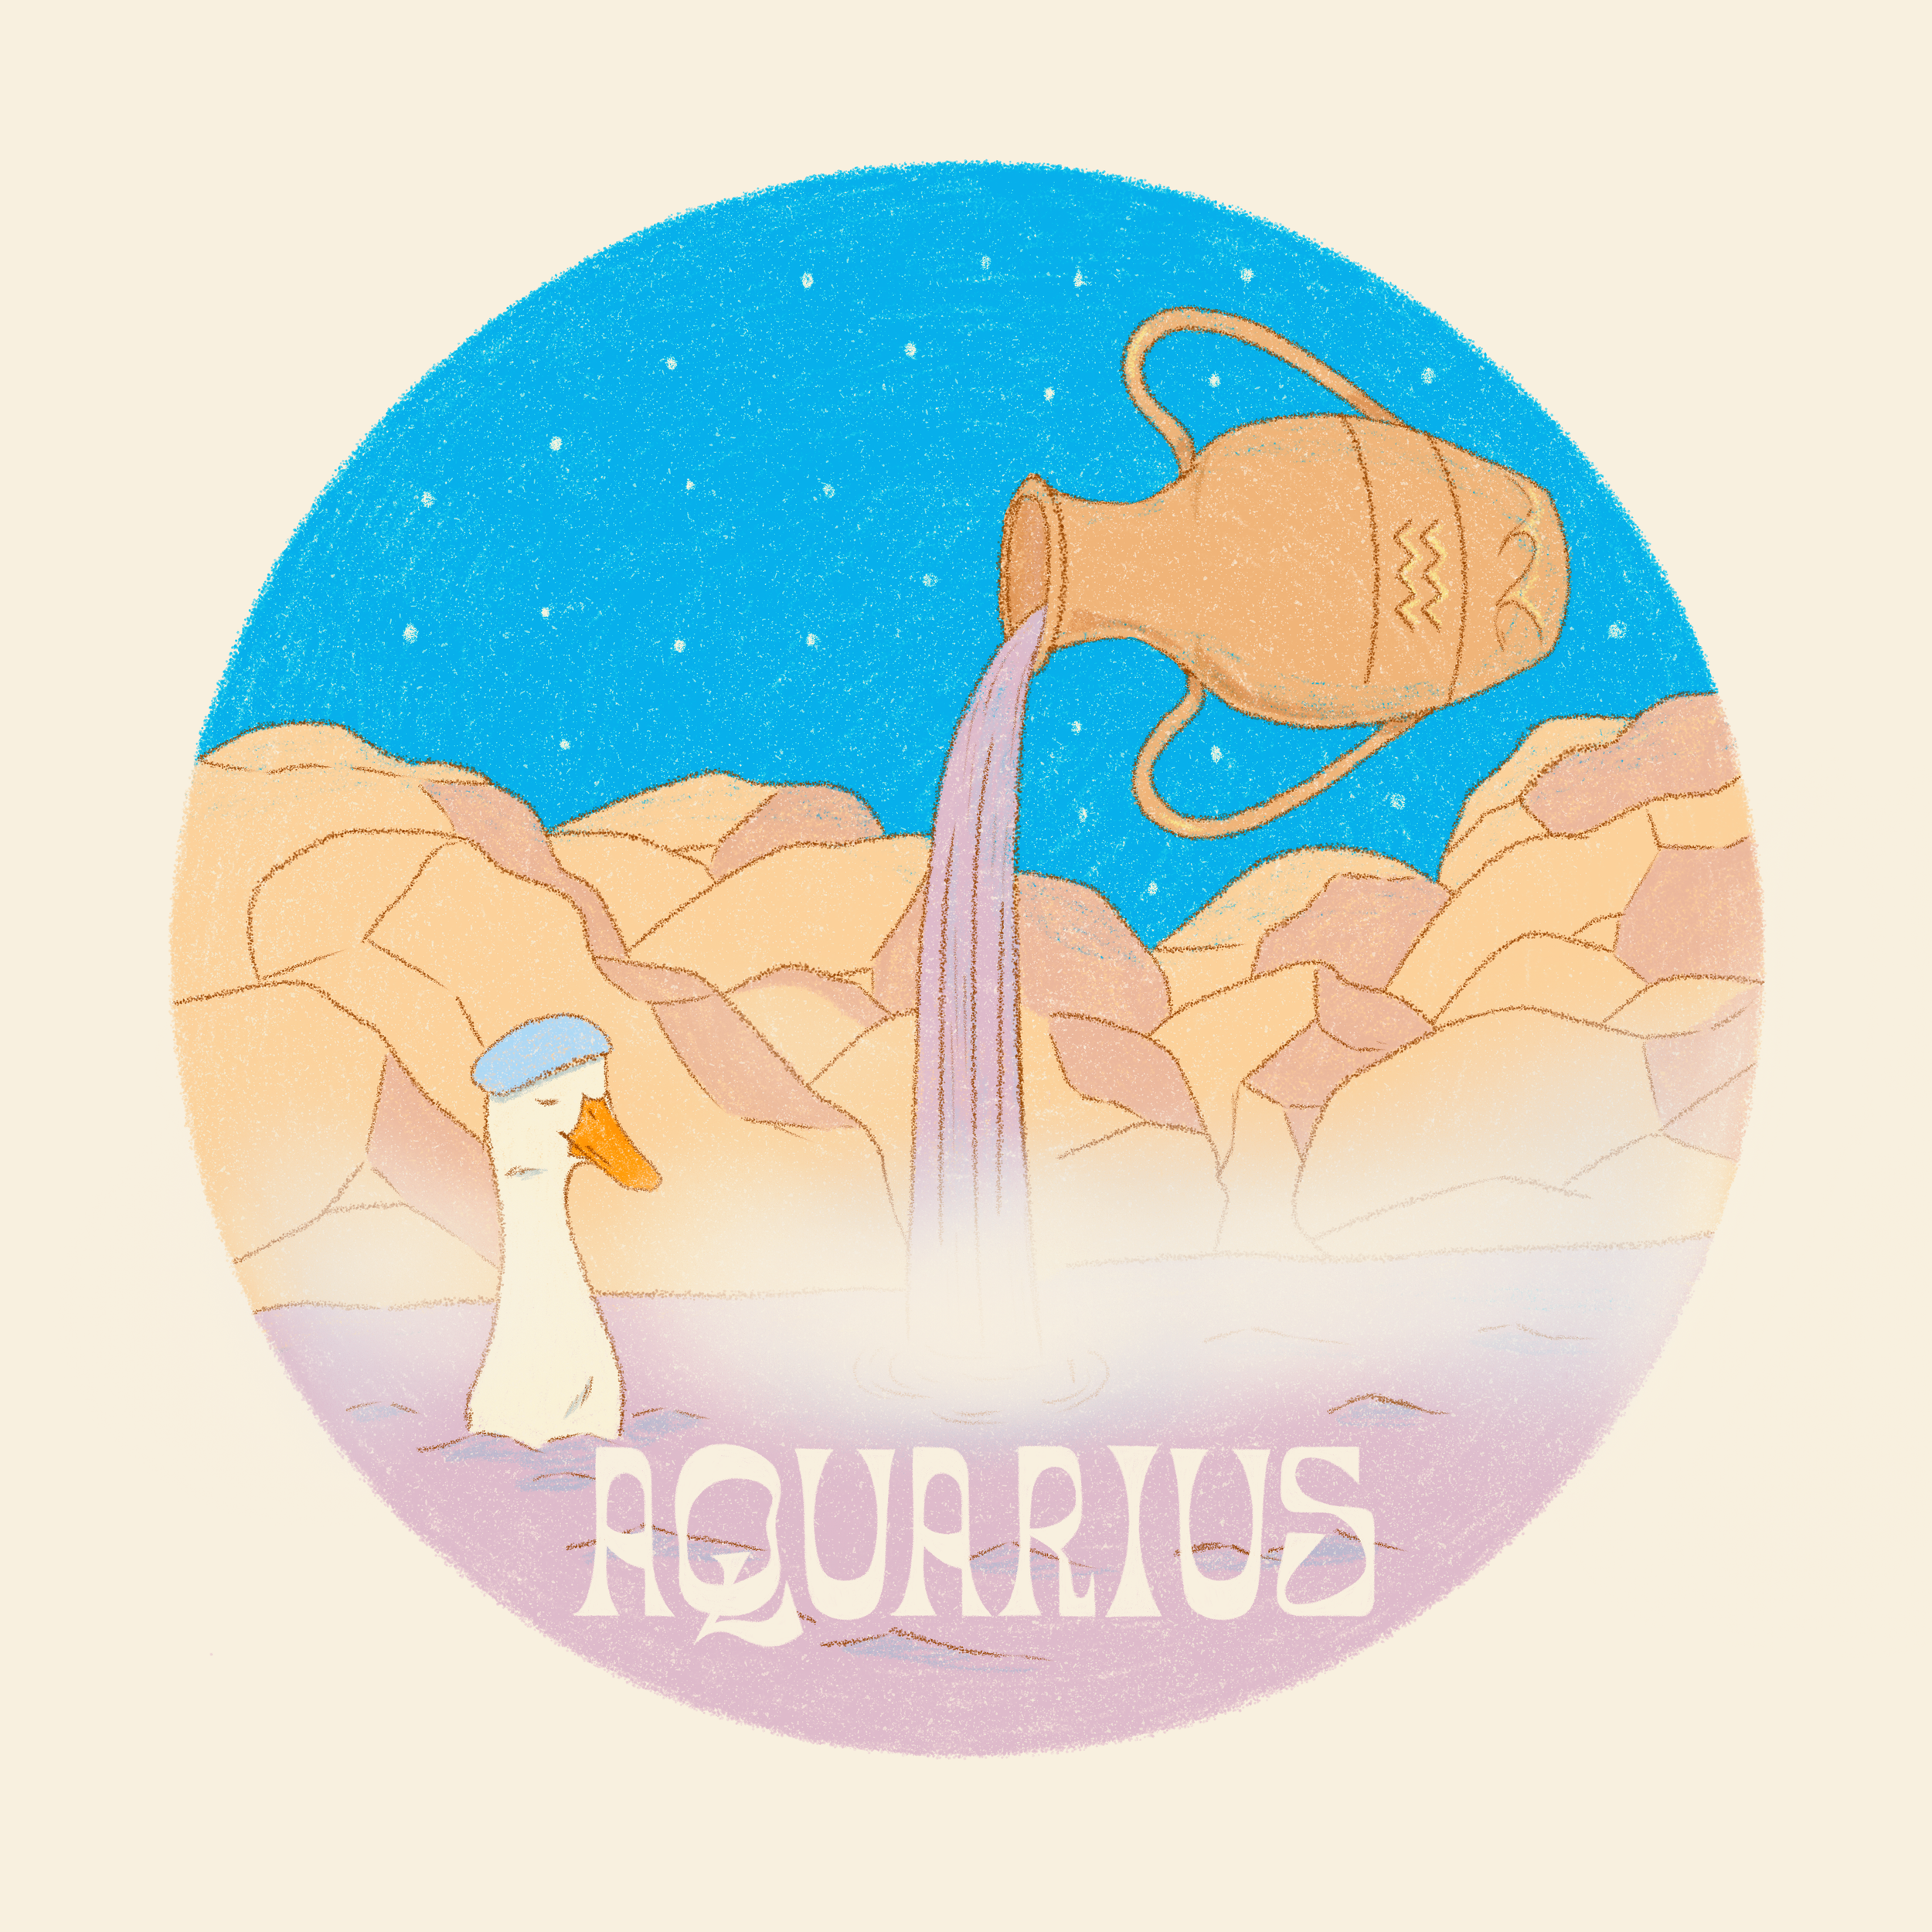 Aquarius - Final.png